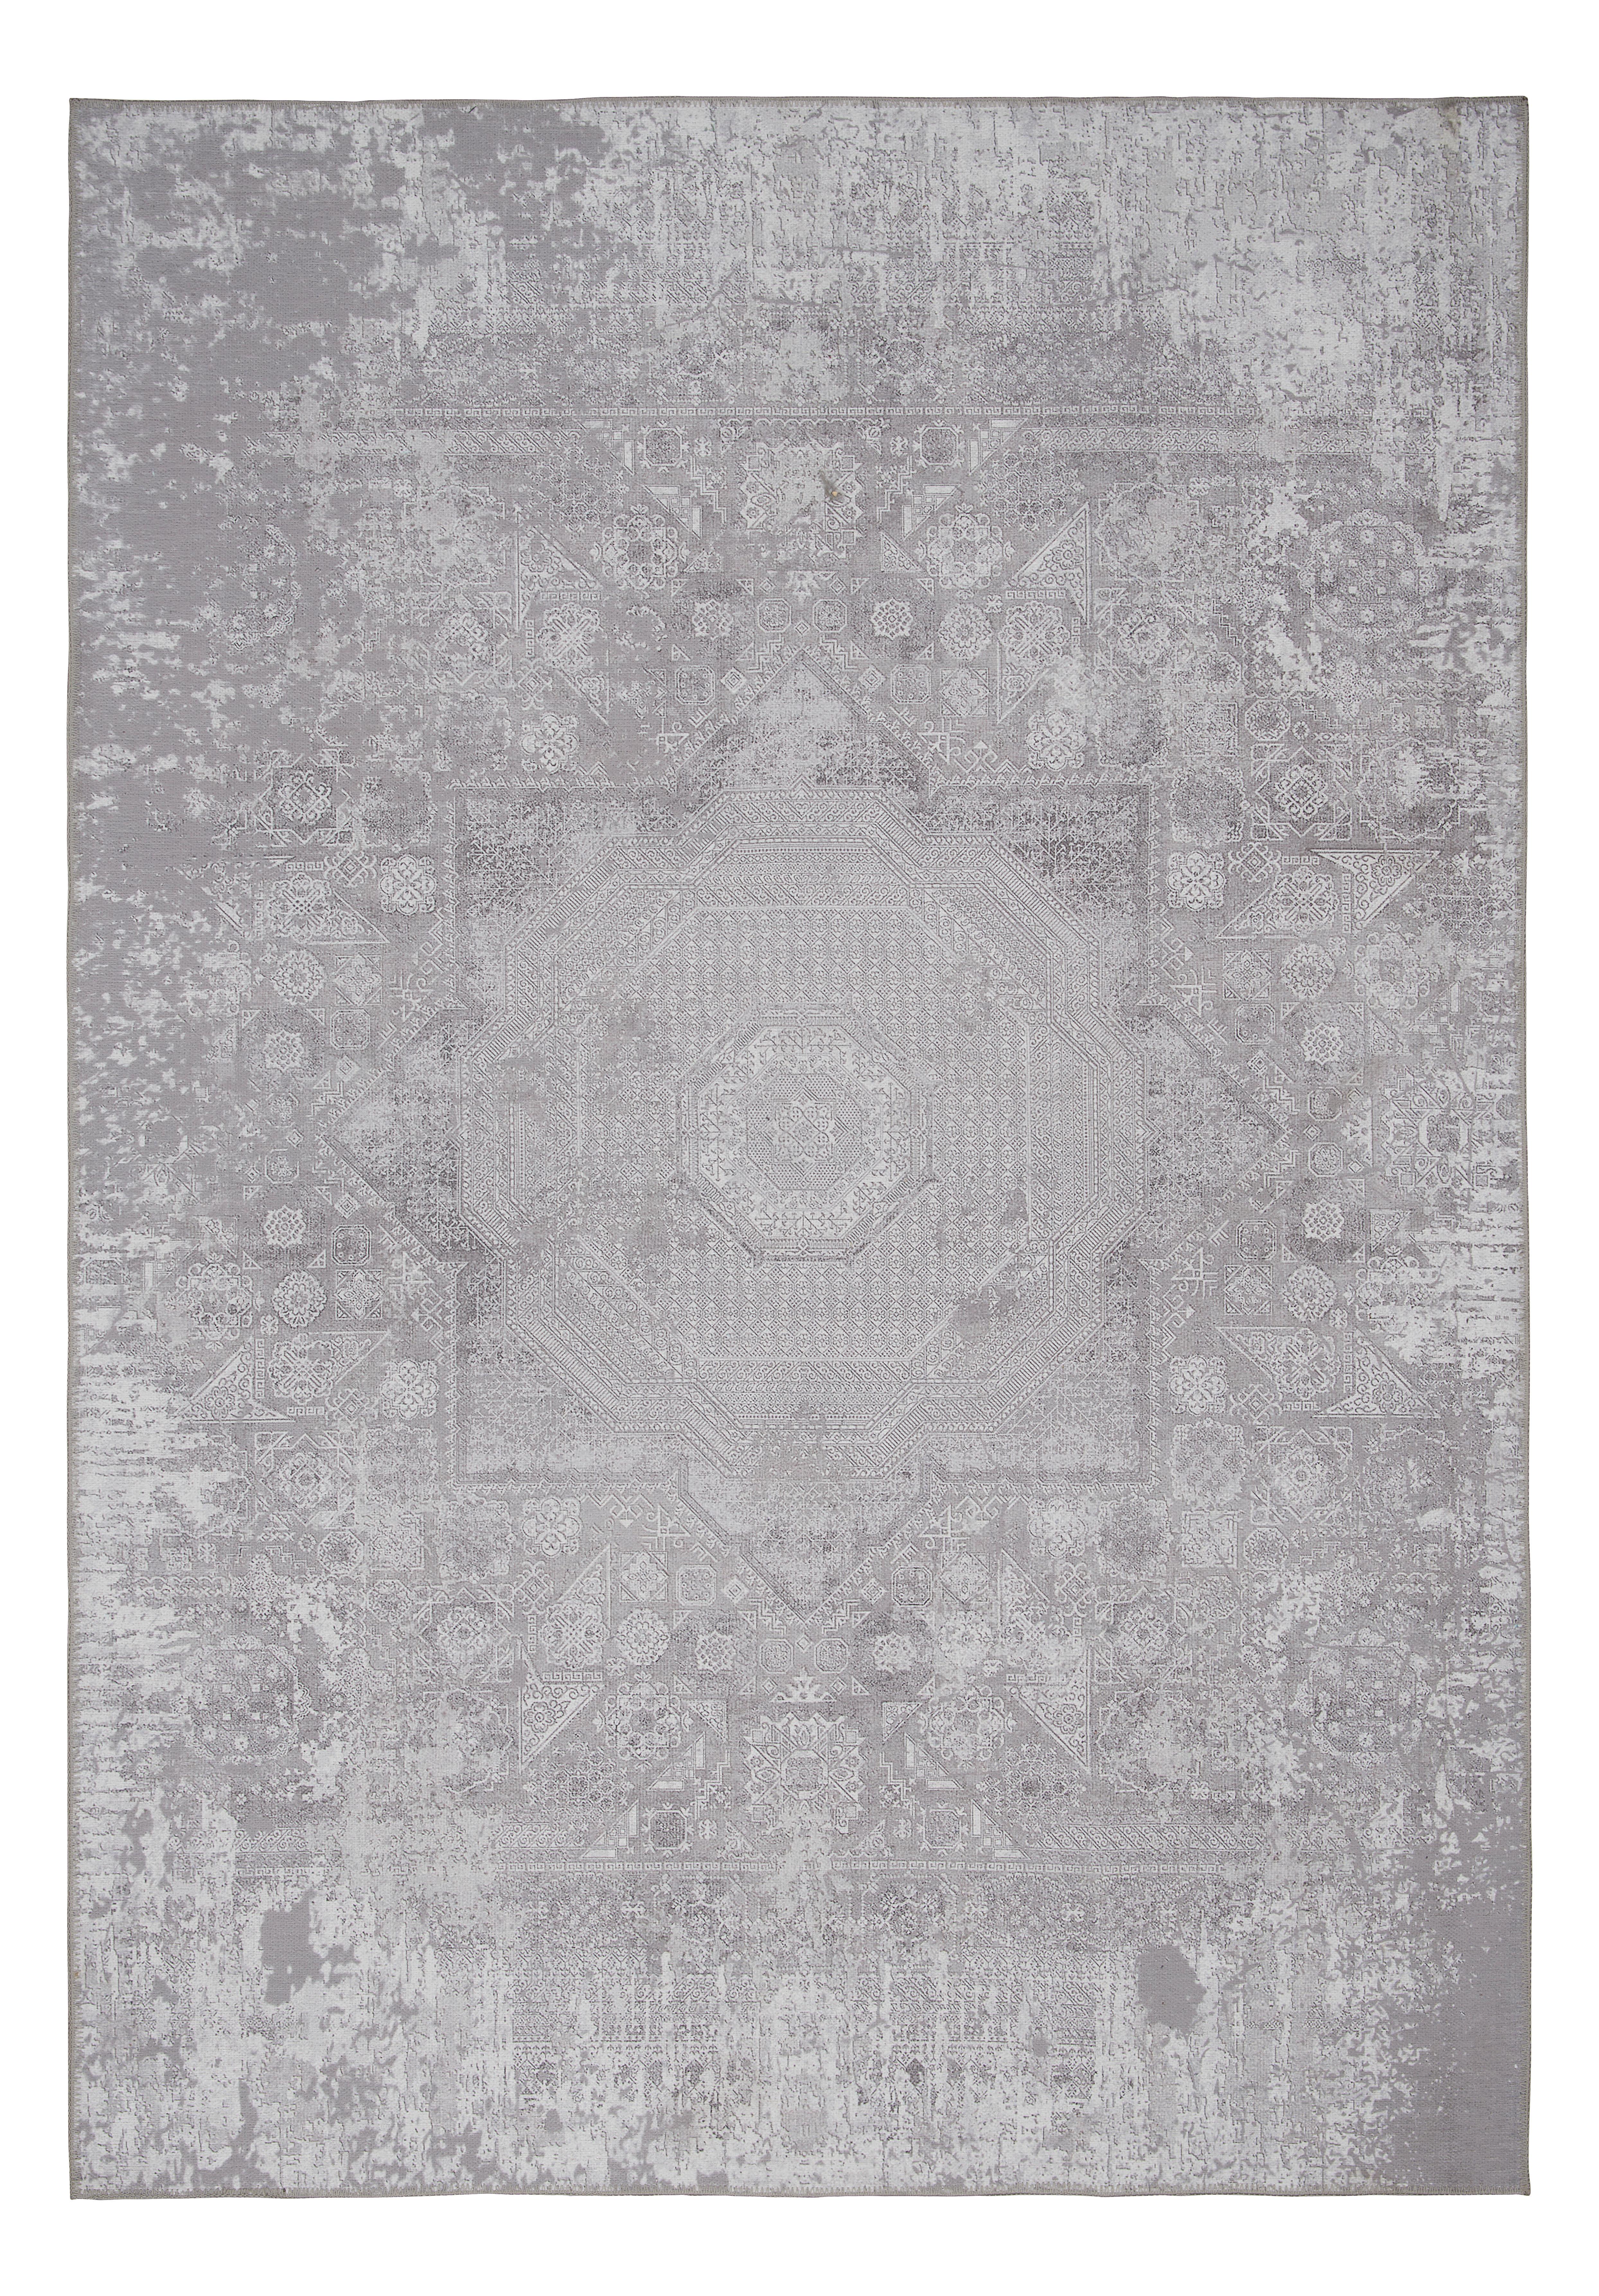 Tepih Niskog Tkanja 80/200cm Olivia - krem, Konventionell, tekstil (80/200cm) - Modern Living